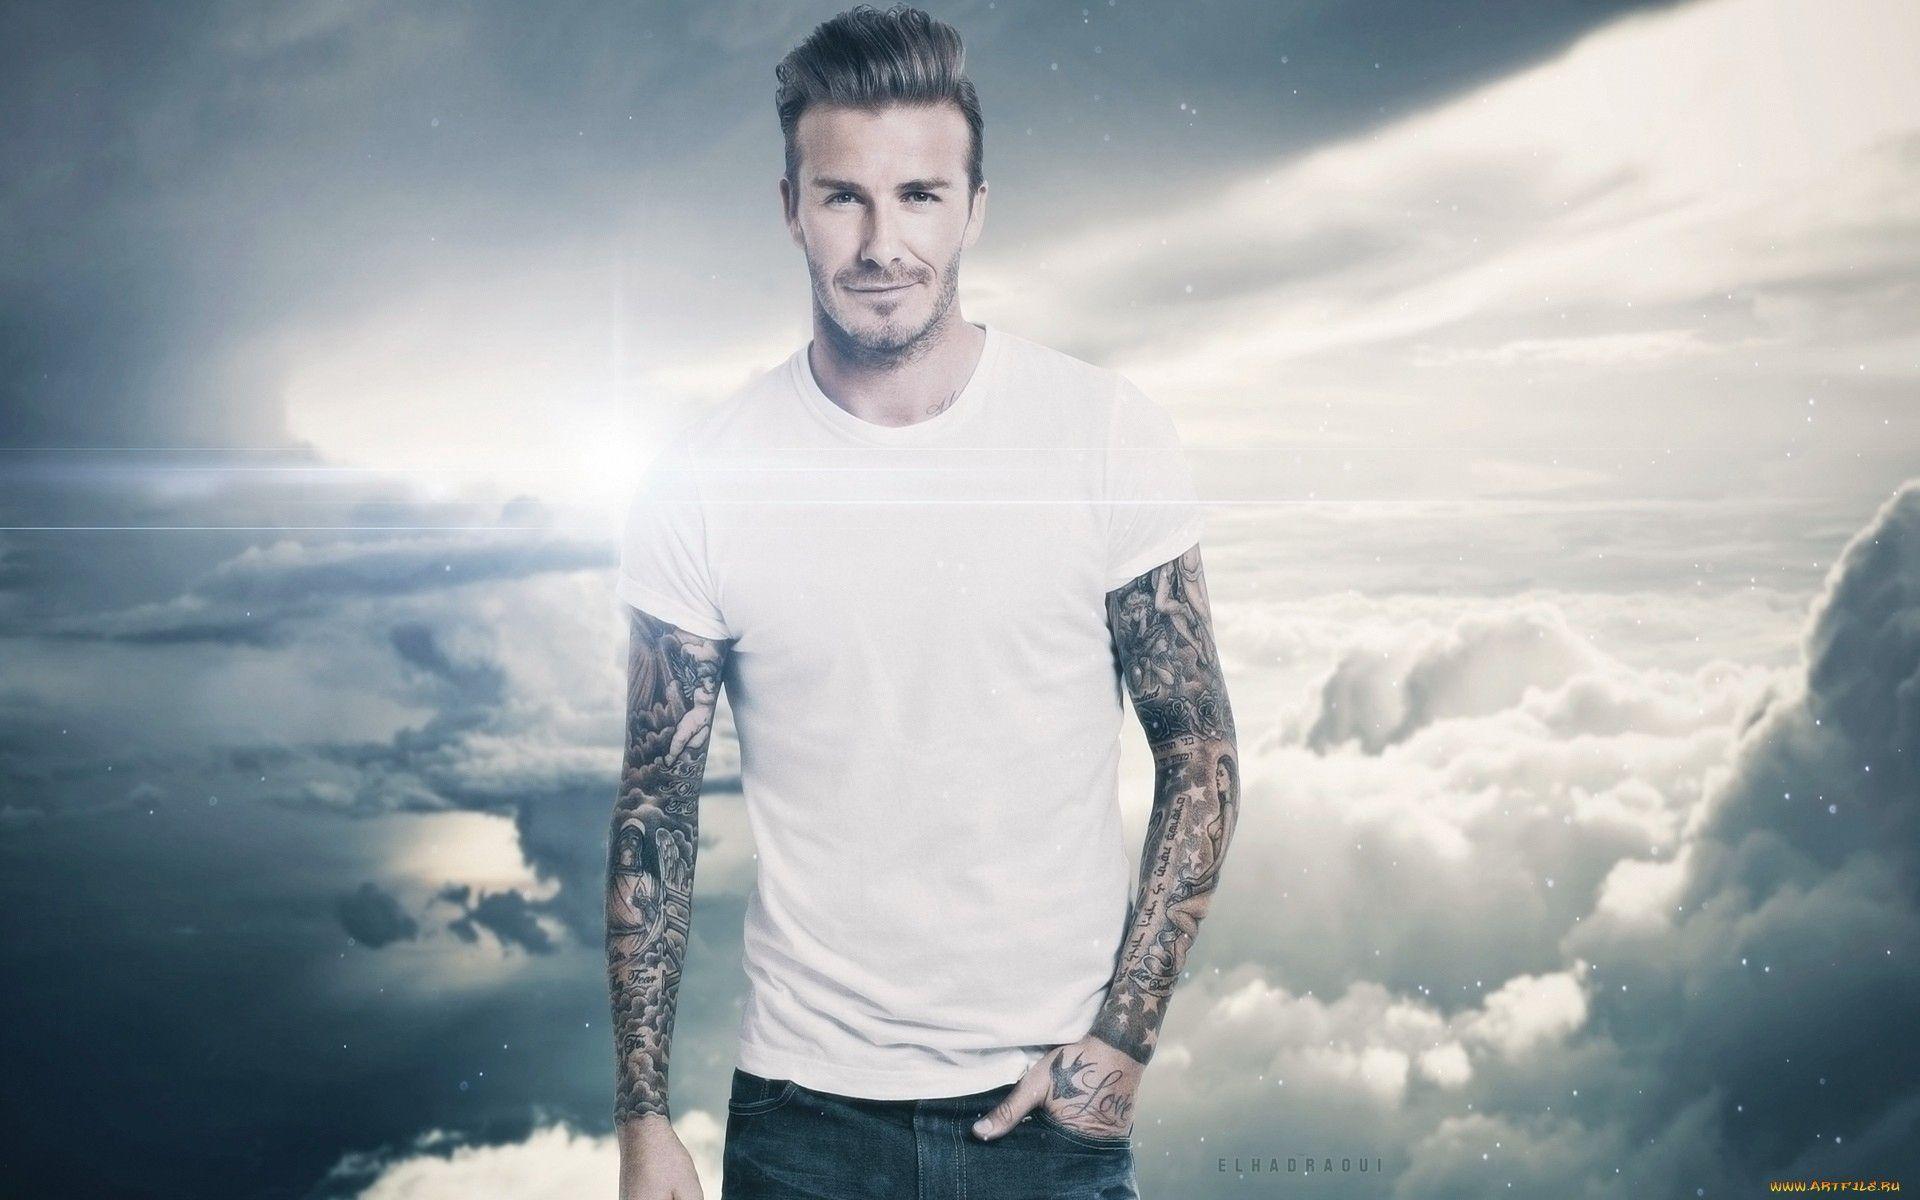 David Beckham Wallpaper. David Beckham Background